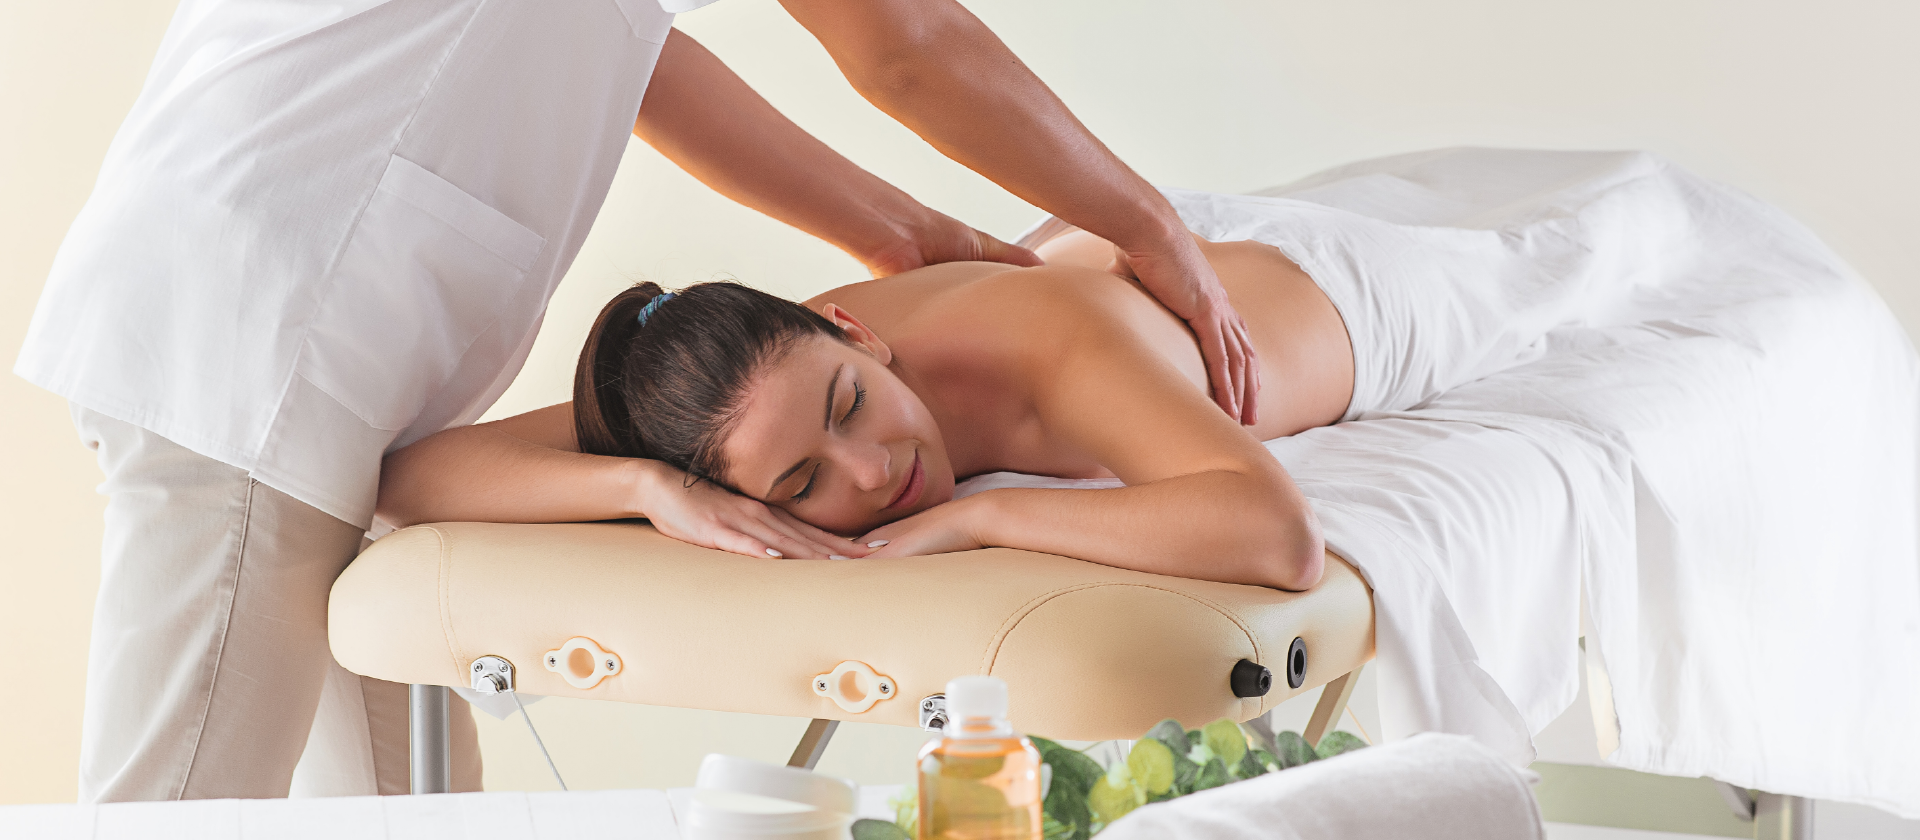 Los masajes y sus beneficios para la salud